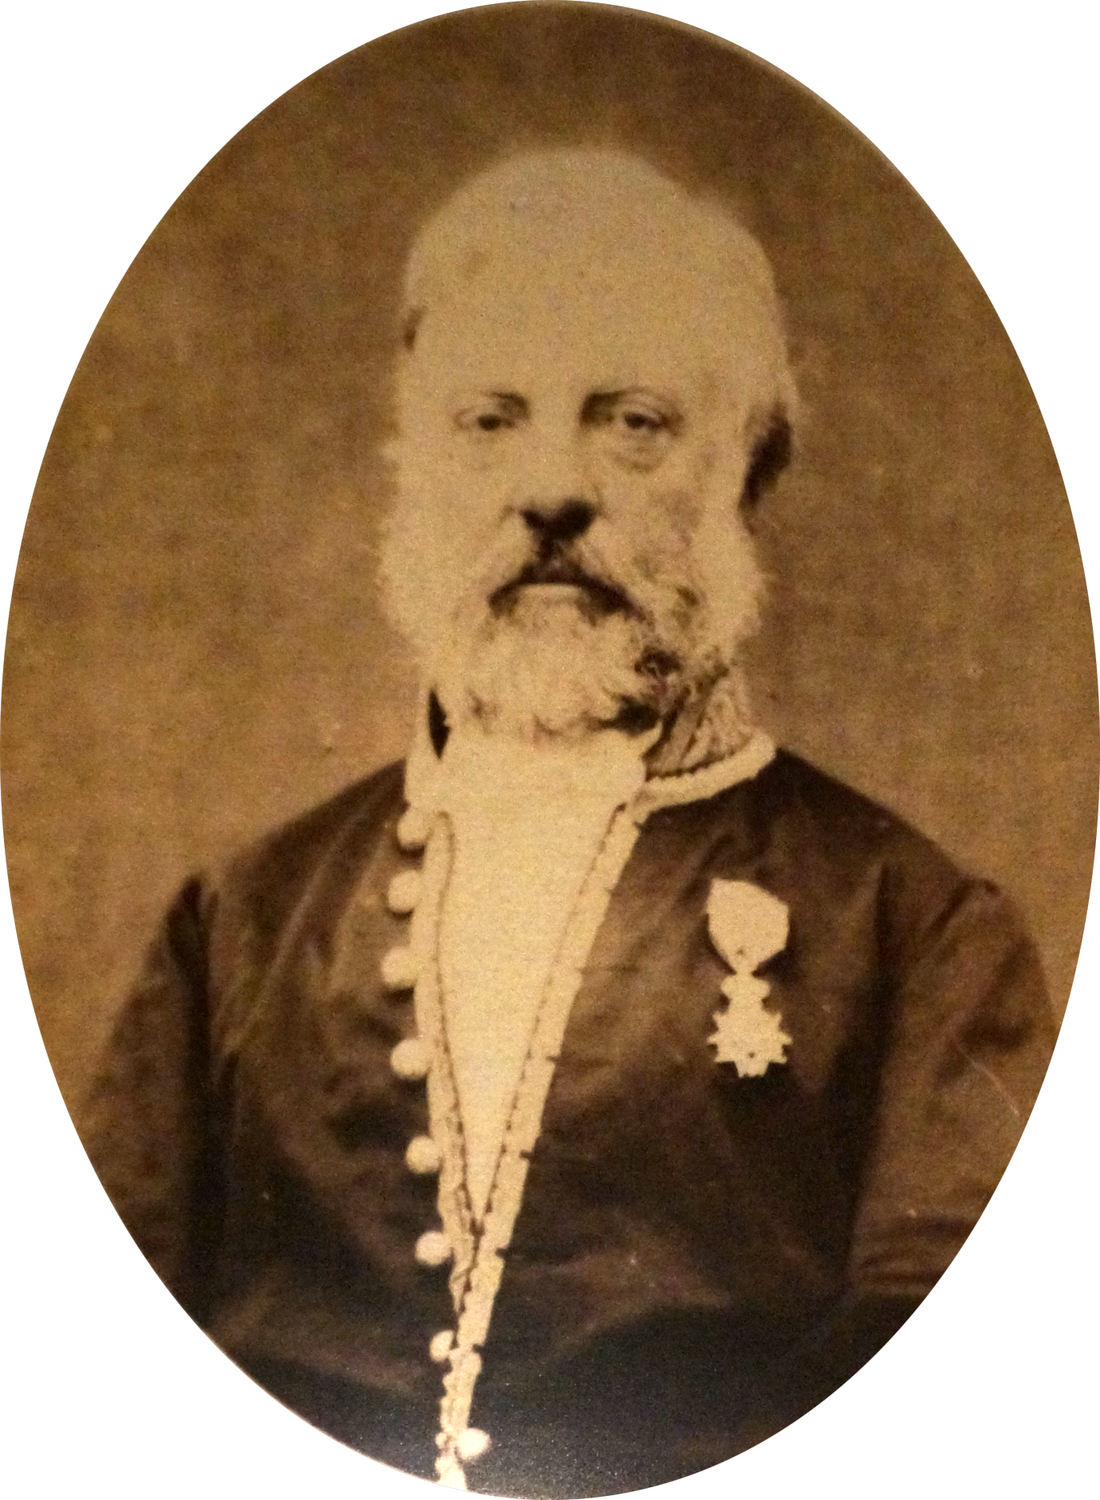 Photograph of Pierre-Eugène Lamairesse